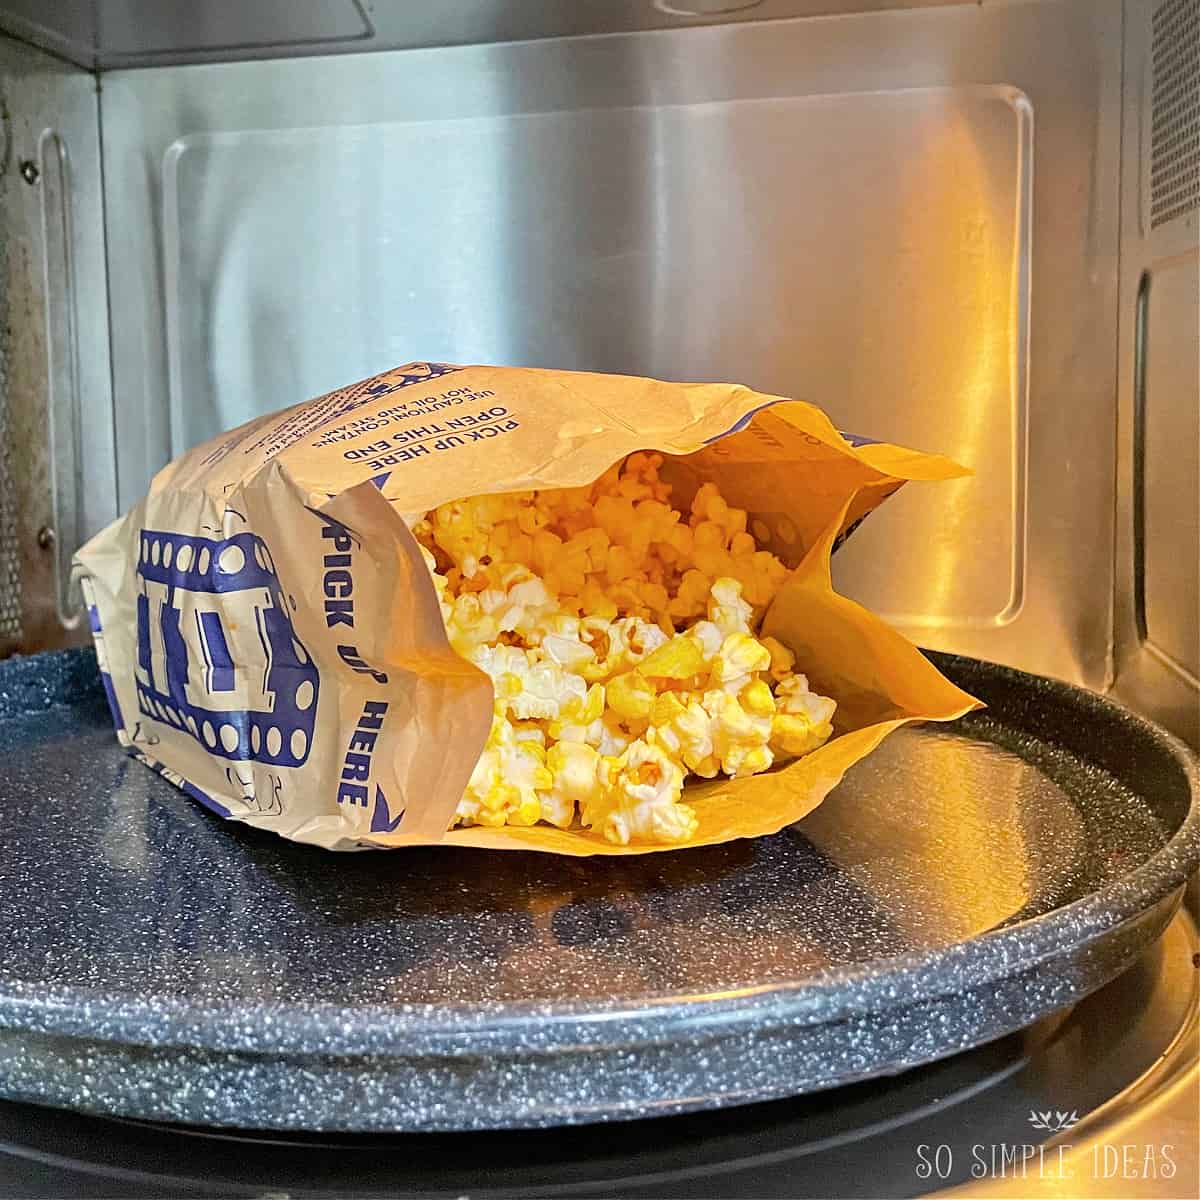 popcorn bag in microwave.